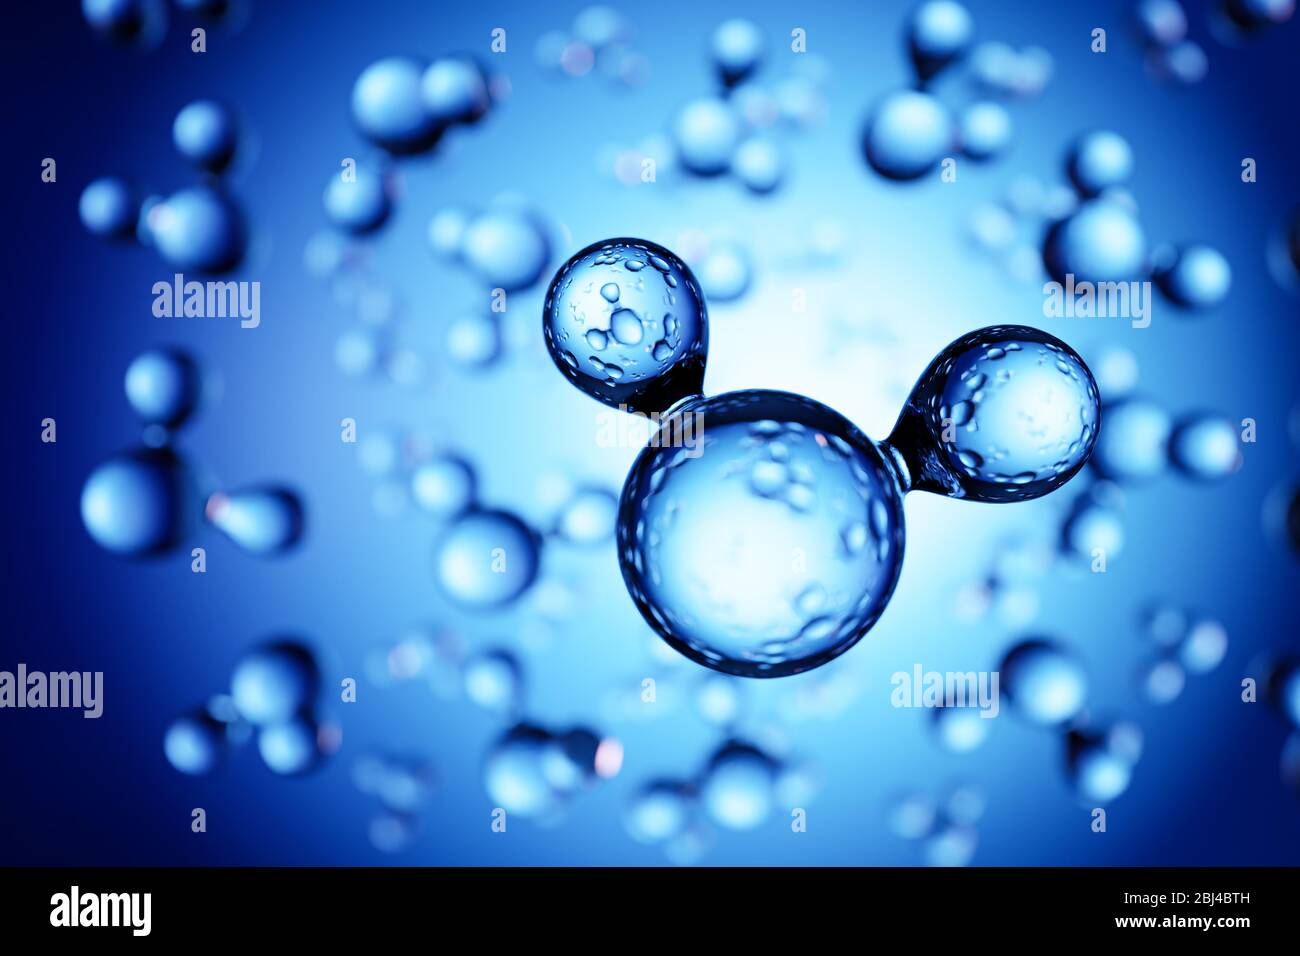 Presentación 3d: Modelos de moléculas de agua H2O delante del fondo azul. Enfoque selectivo en primer plano Foto de stock